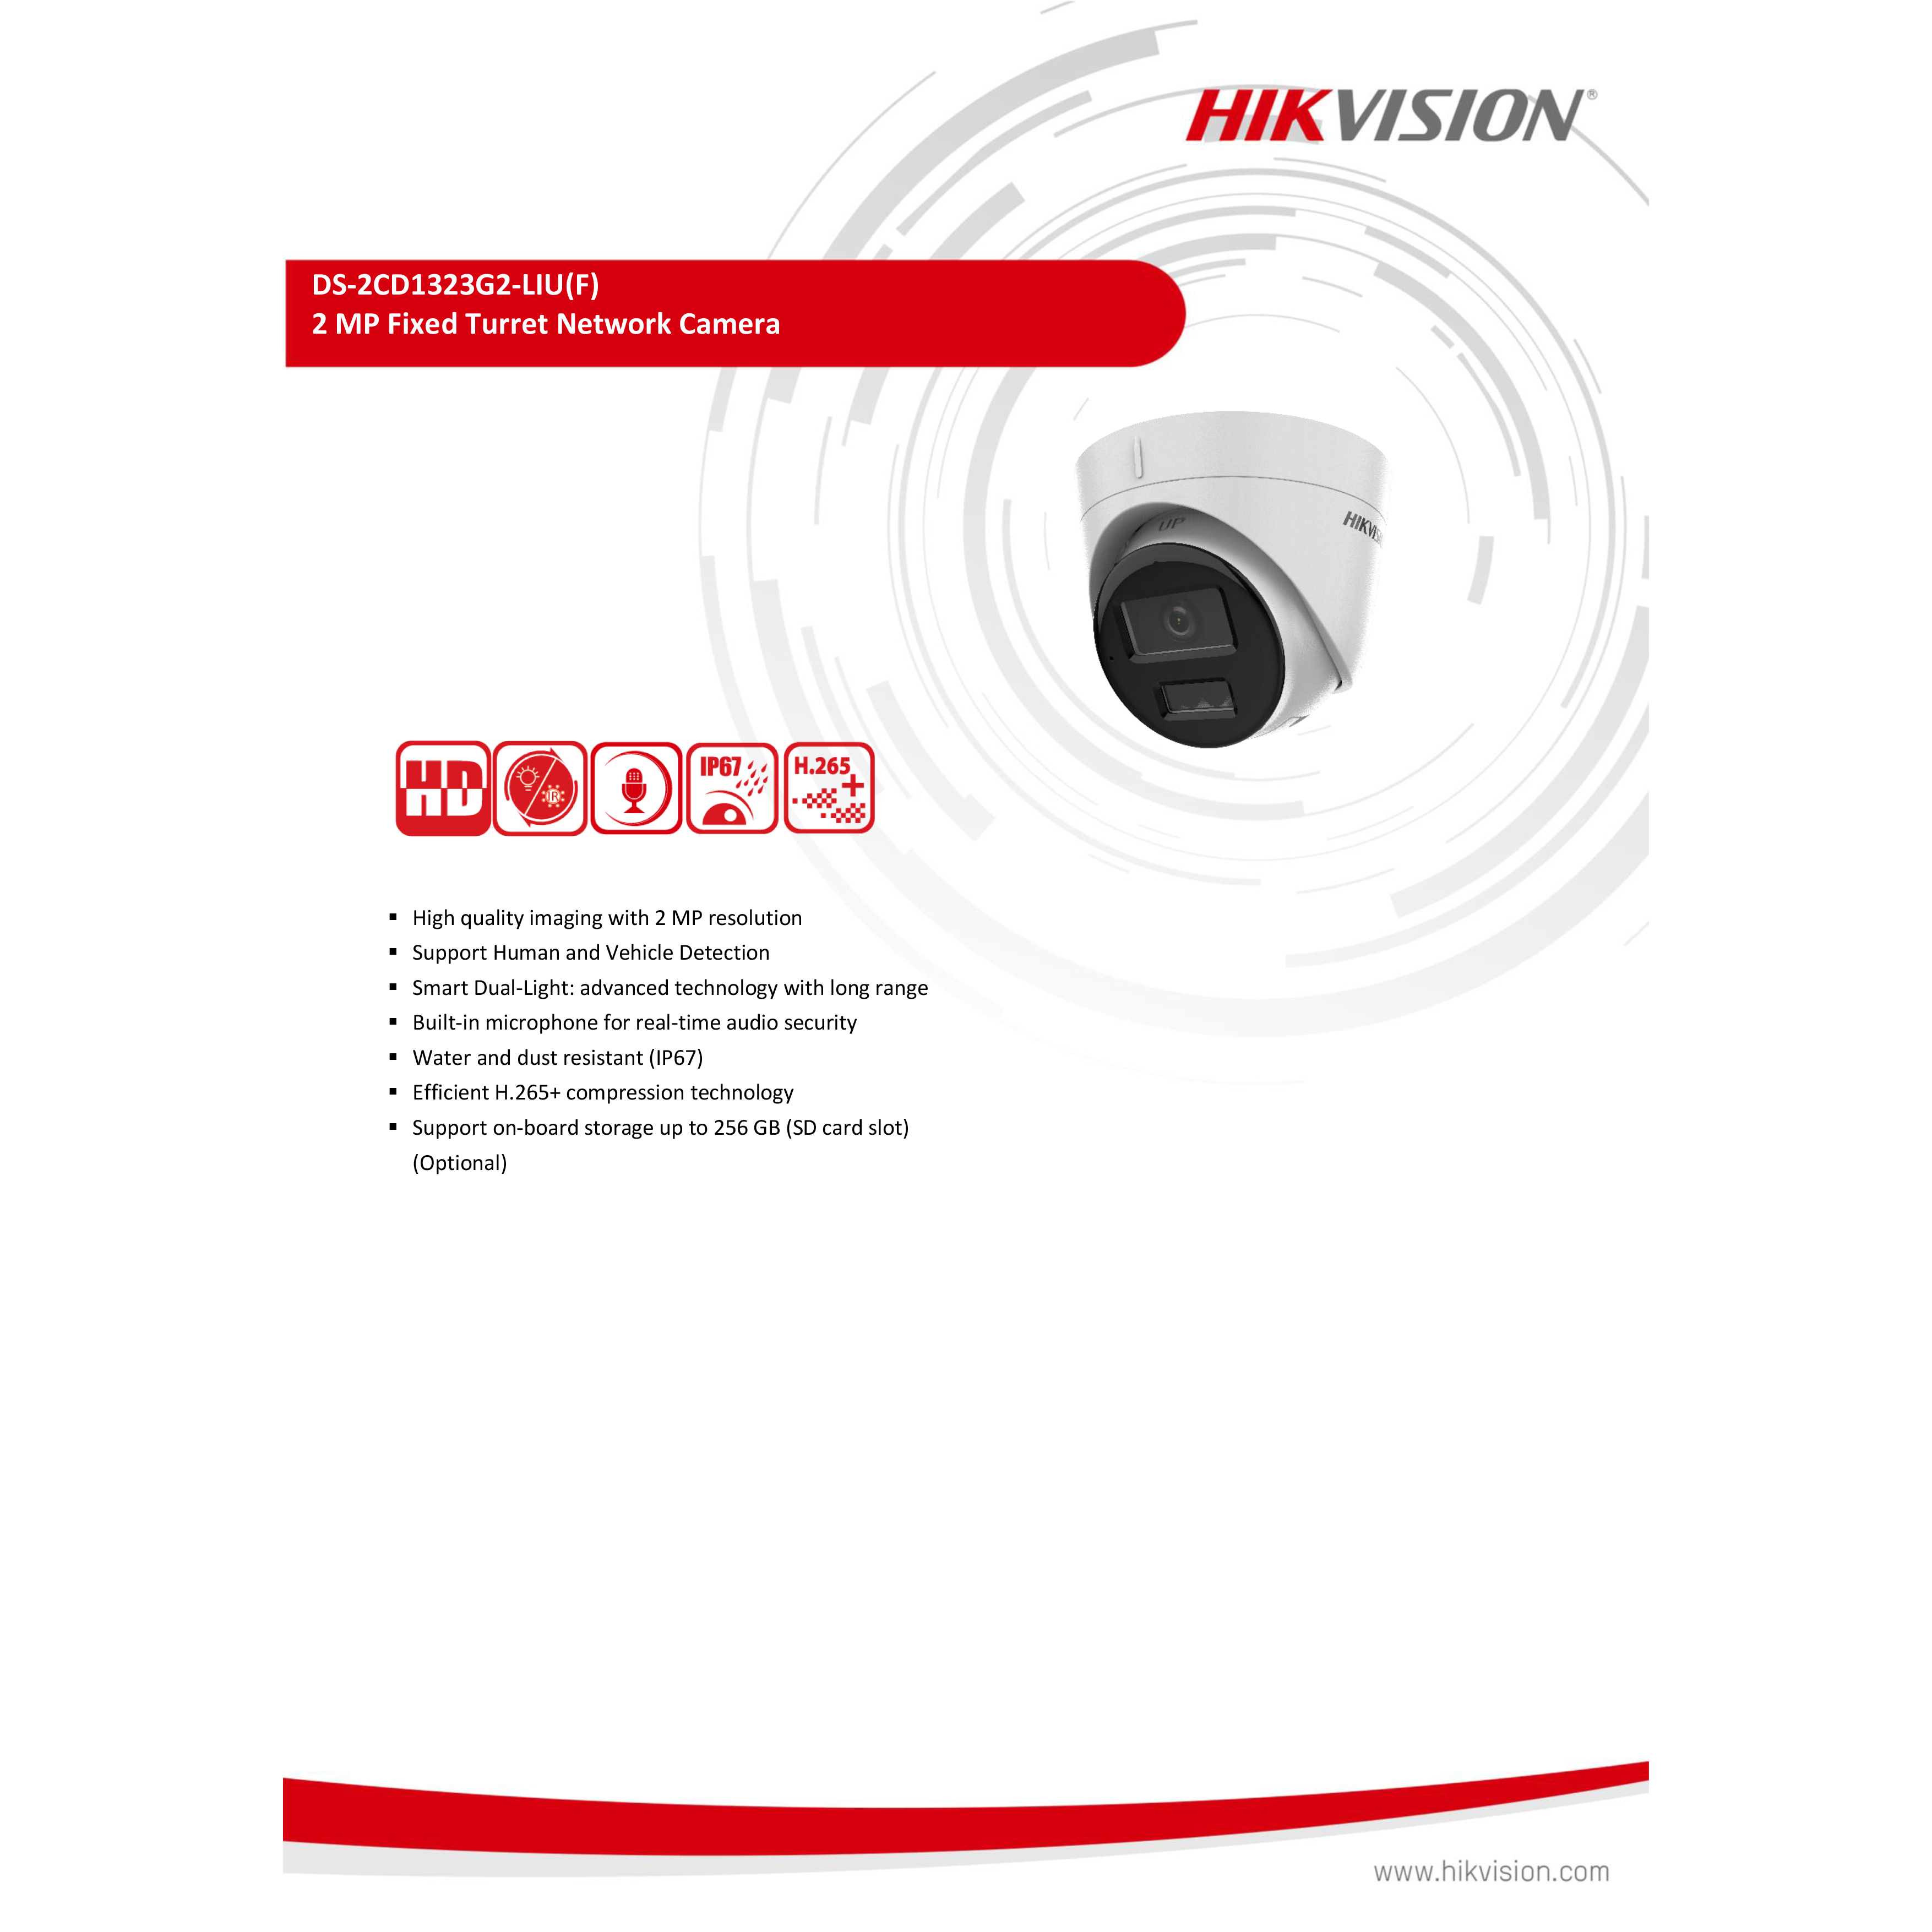 hikvision-ds-2cd1323g2-liuf-2-8-mm-กล้องวงจรปิดระบบ-ip-2-mp-มีไมค์ในตัว-เลือกปรับโหมดเป็นภาพสี-24-ชม-หรือภาพขาวดำได้